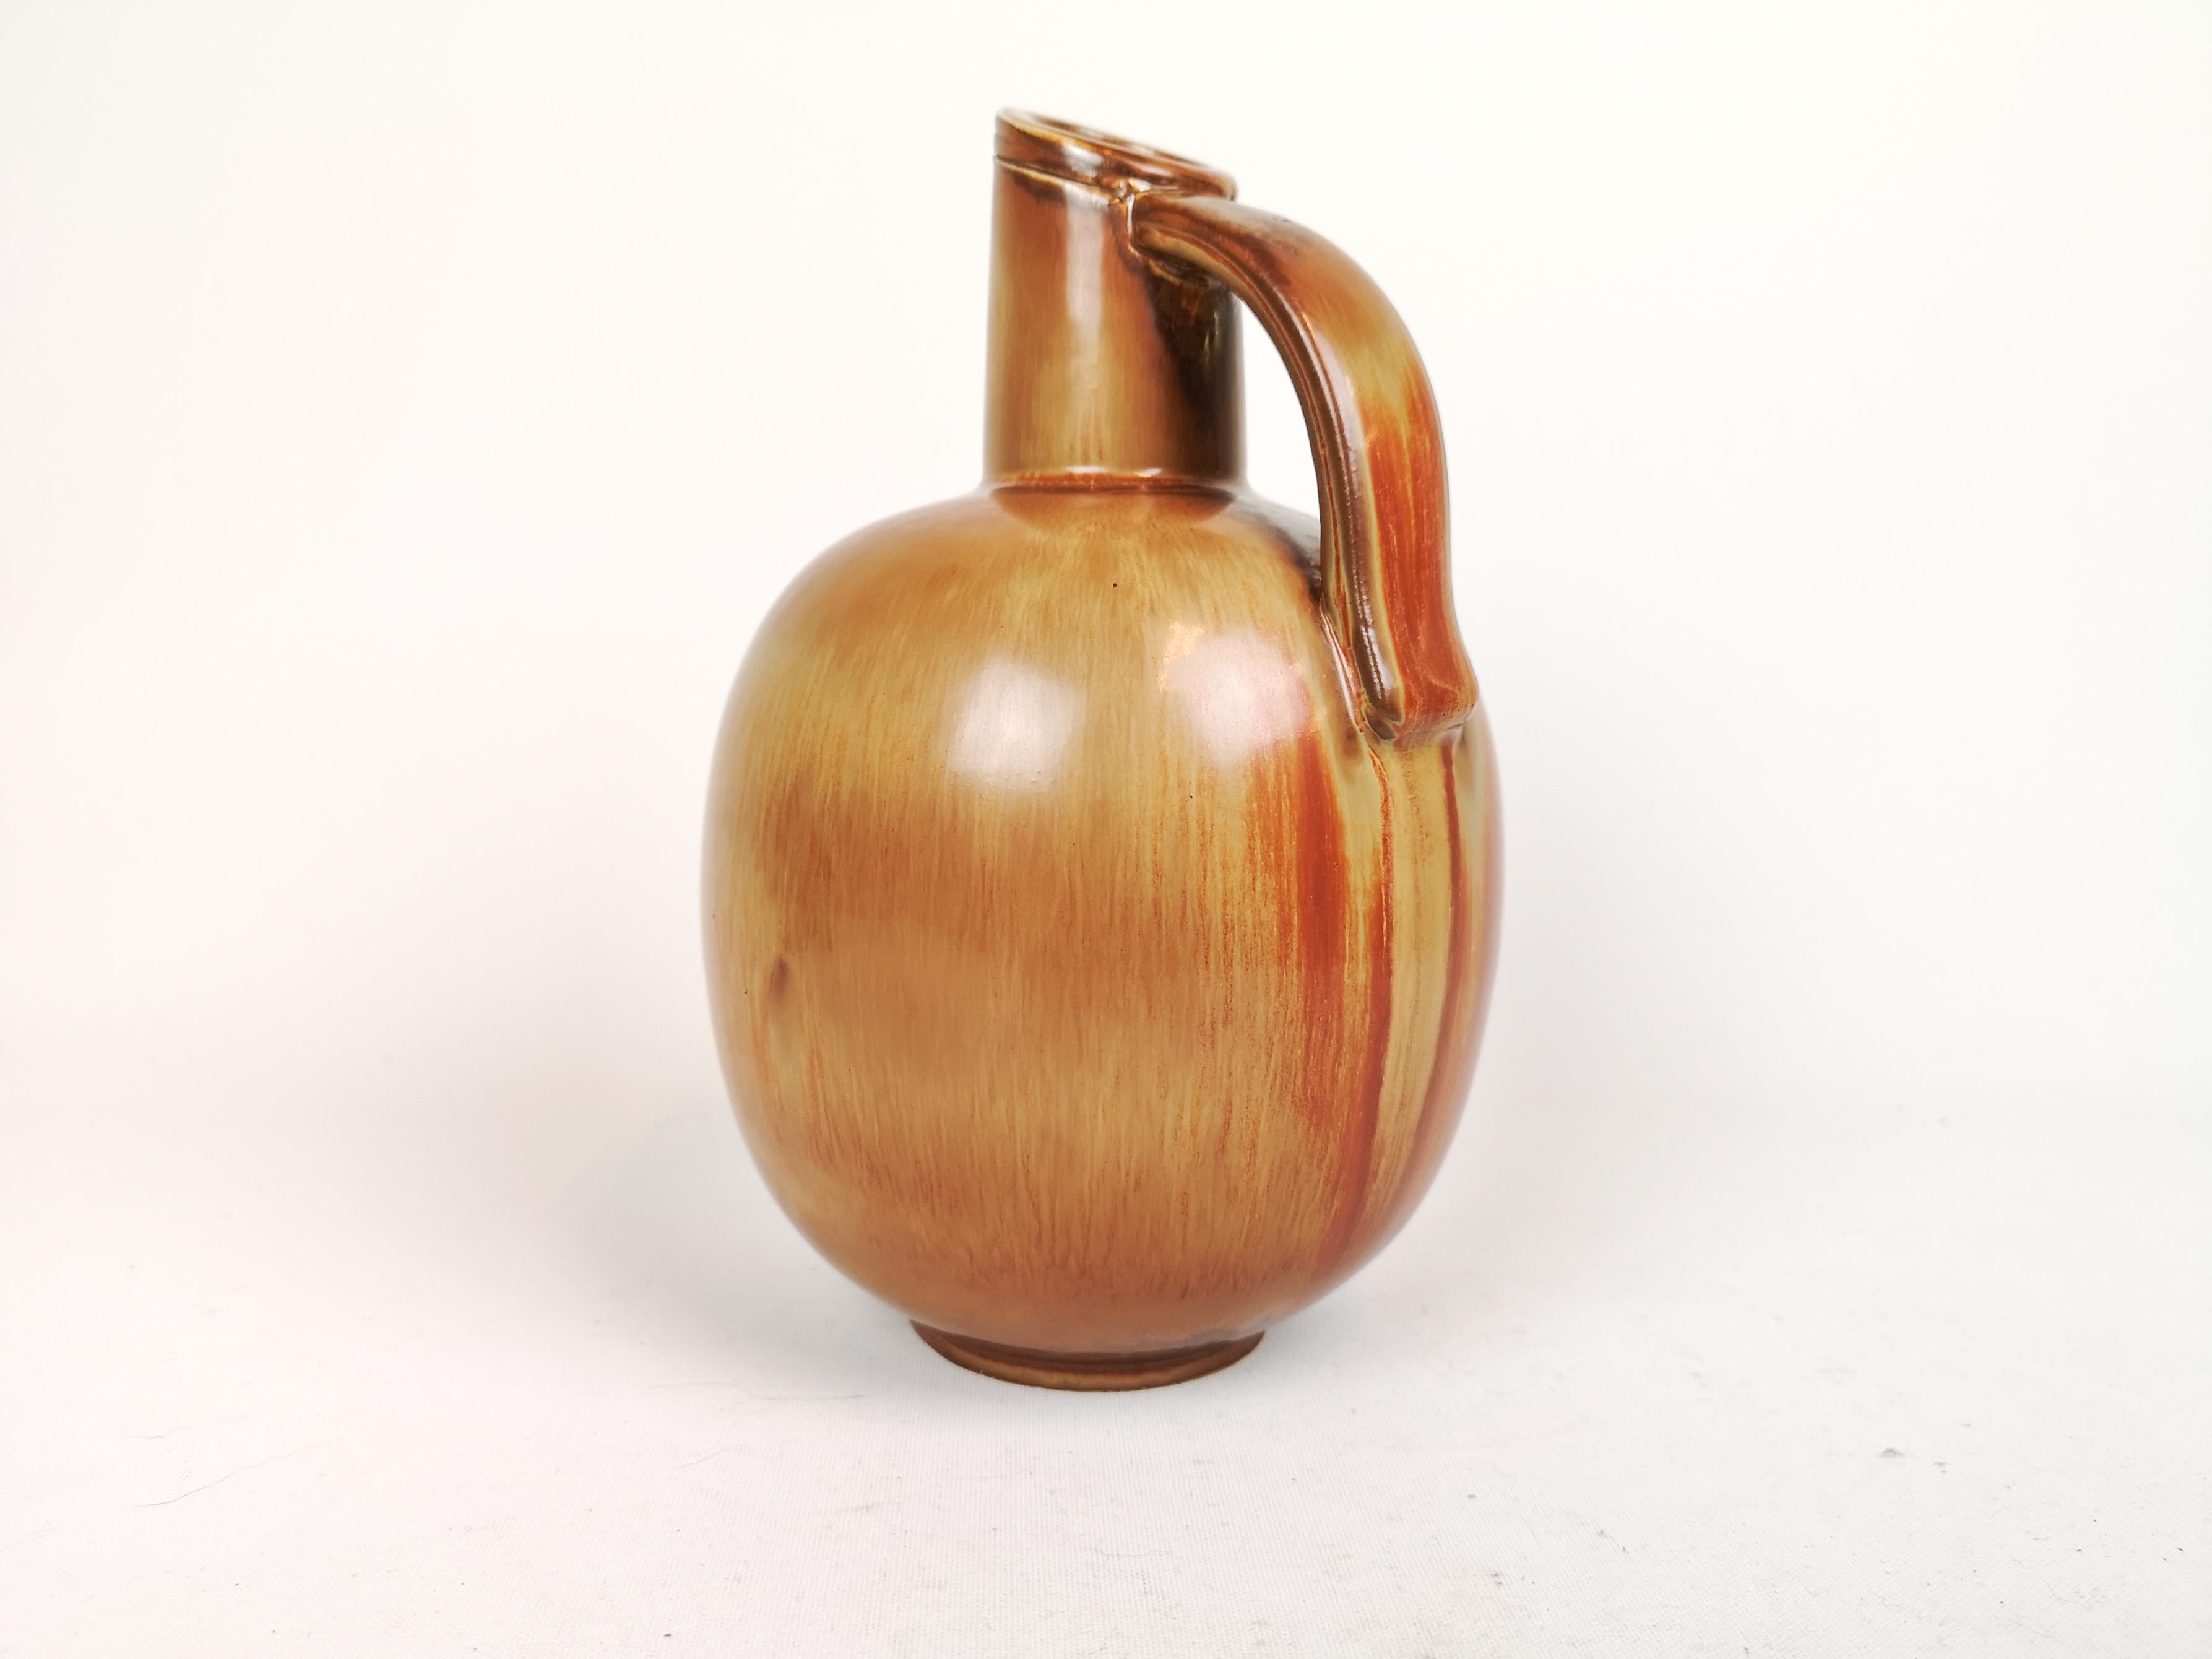 Ce merveilleux vase a été créé et dessiné par Gunnar Nylund à l'usine de Rörstrand dans les années 1950, en Suède.

La glaçure brune et dorée est étonnante et s'harmonise parfaitement avec la forme du vase. 

Très bon état. 

Mesures : H 23